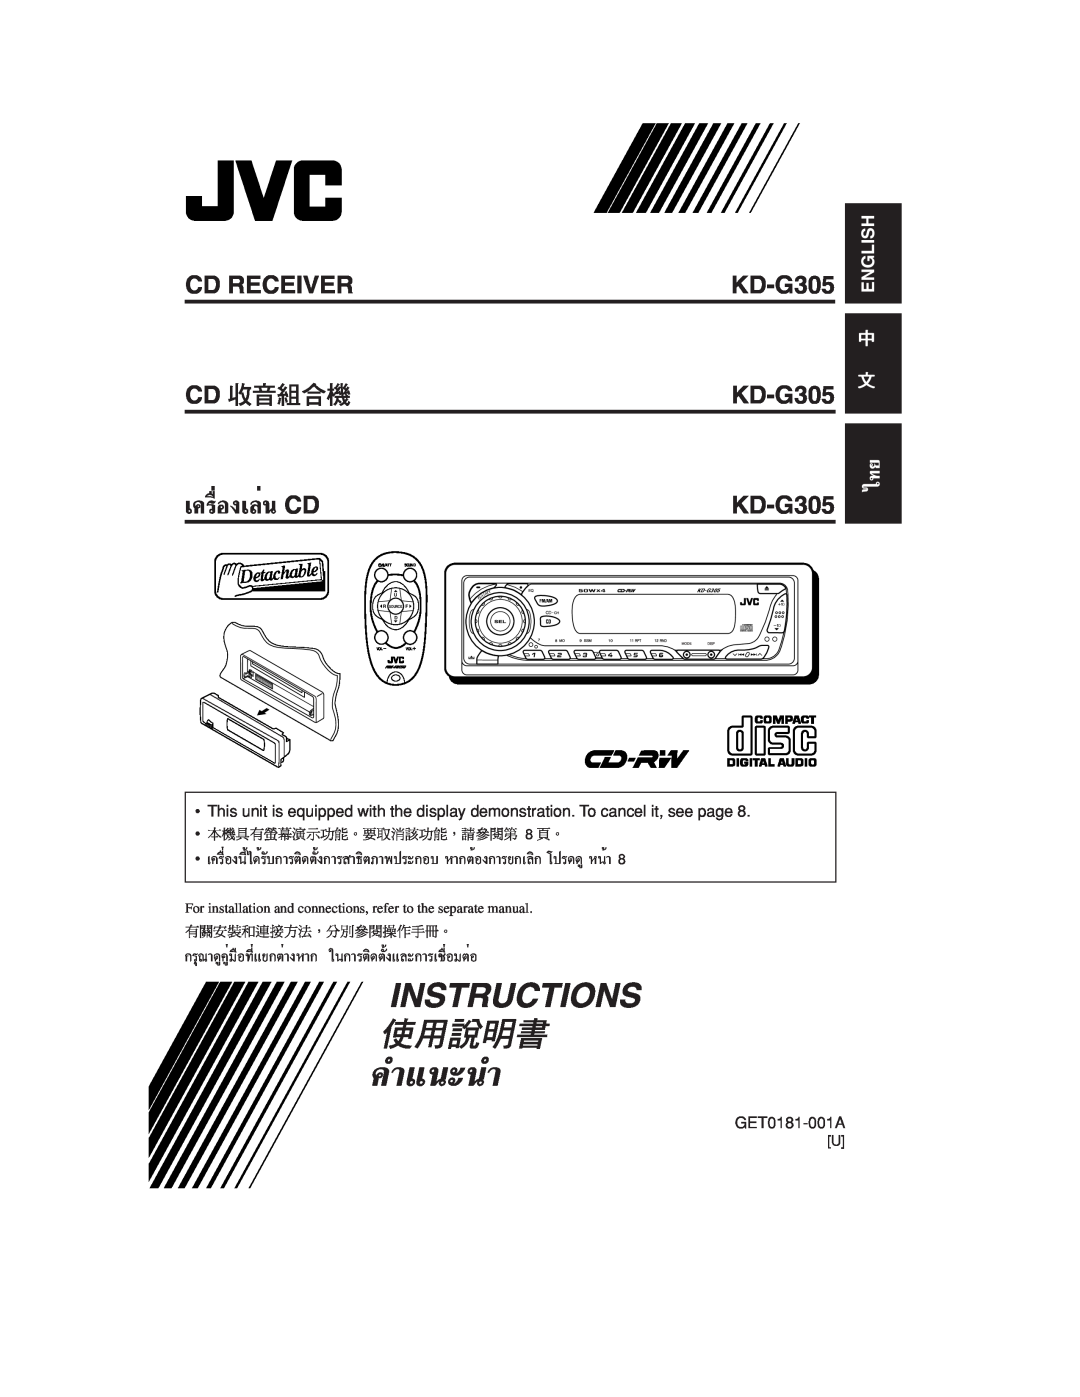 JVC KD-G305 manual ‡§√ËÕß‡≈Ëπ CD, Cd Receiver Cd, §”·π-π”, Instructions, English, R Source, Sound 